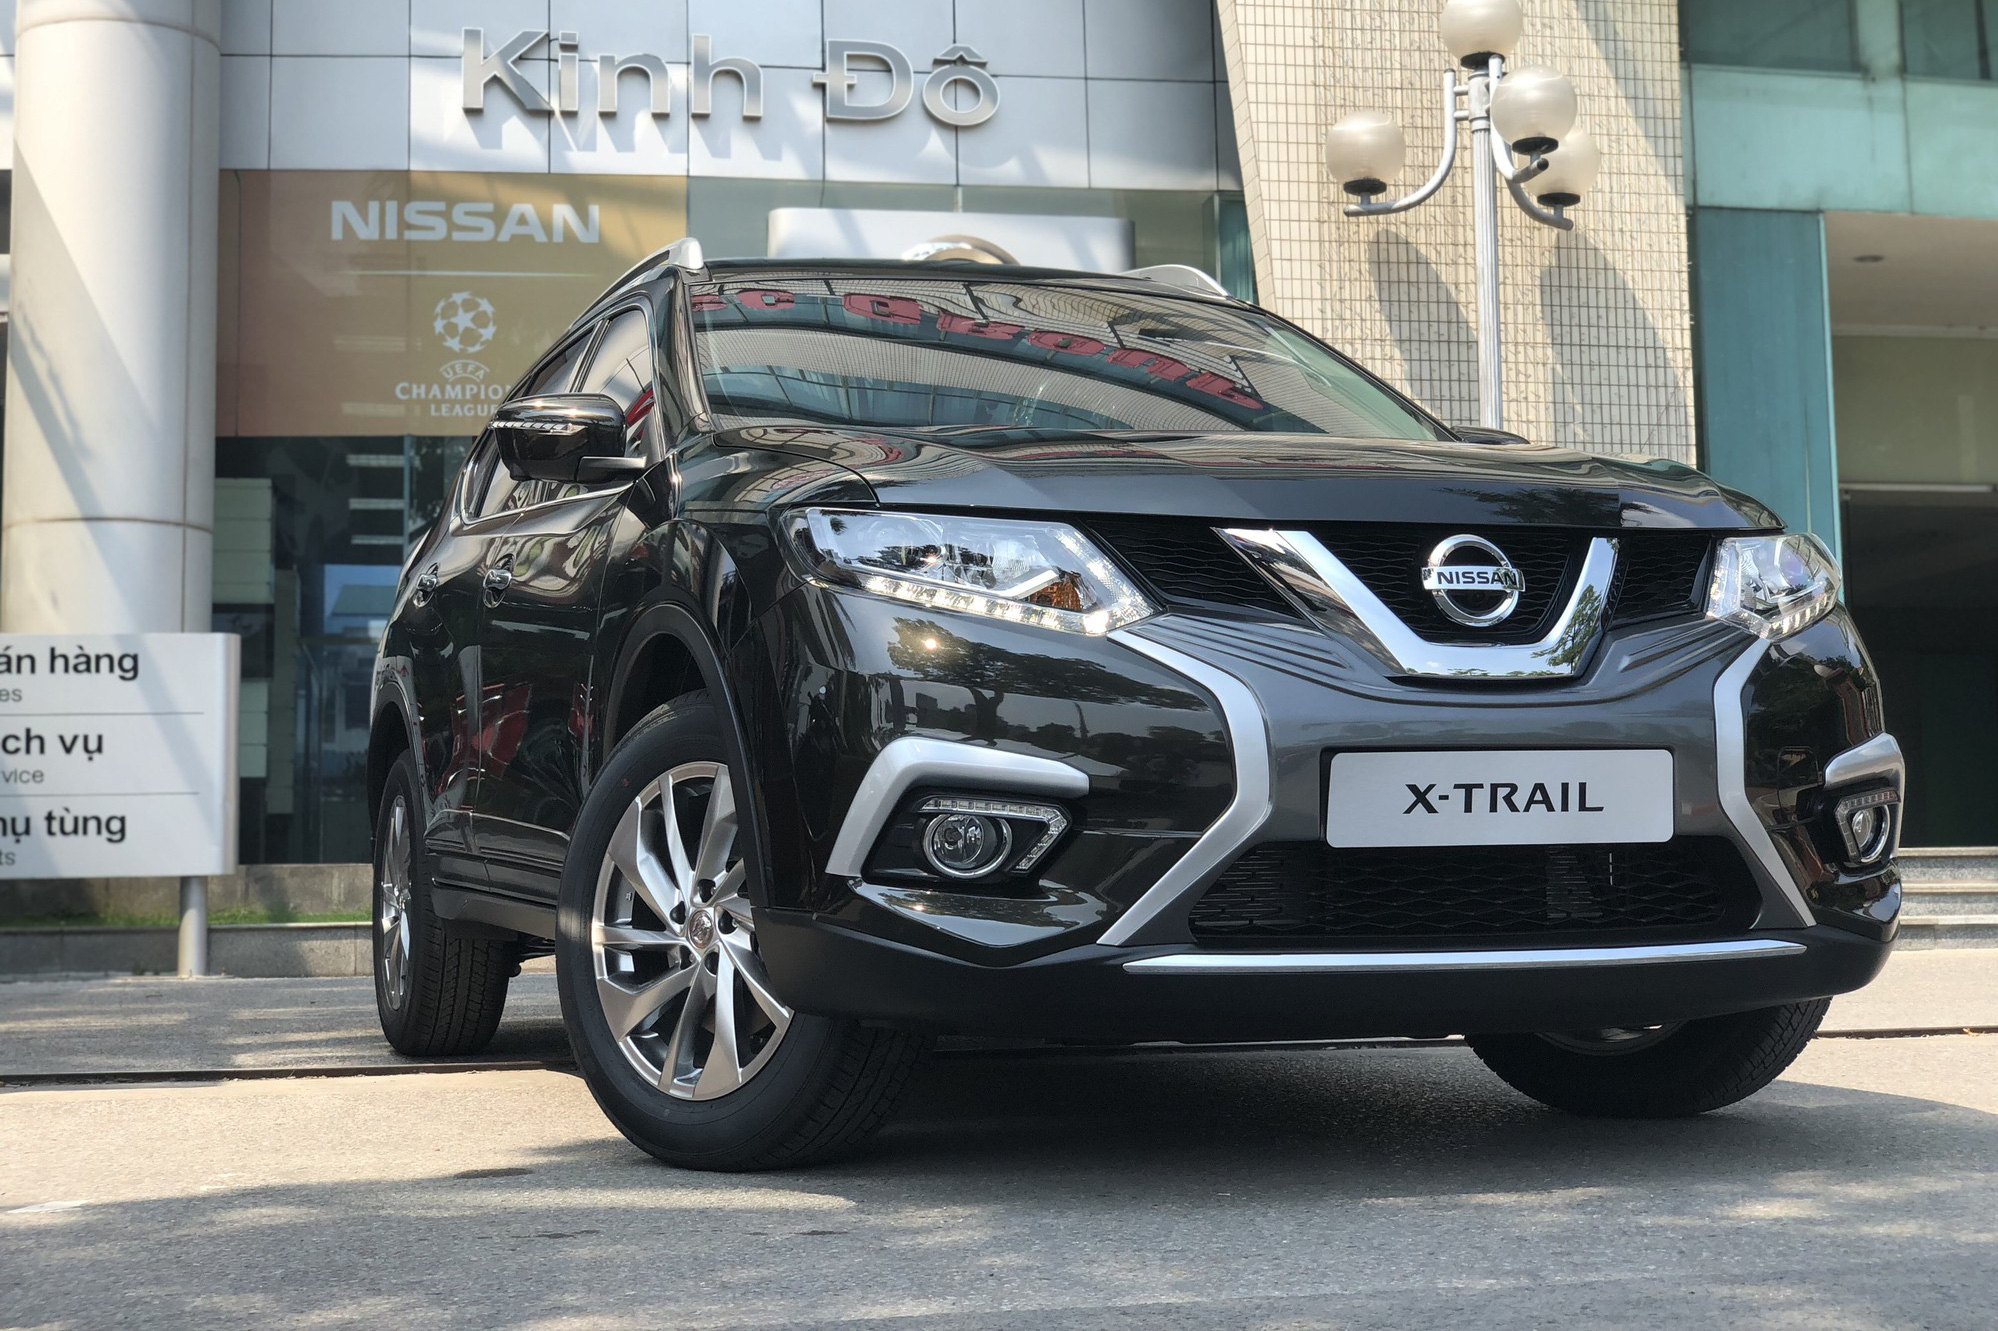 Nissan XTrail 2020 facelift giá 21 tỷ đồng sắp về Việt Nam có gì